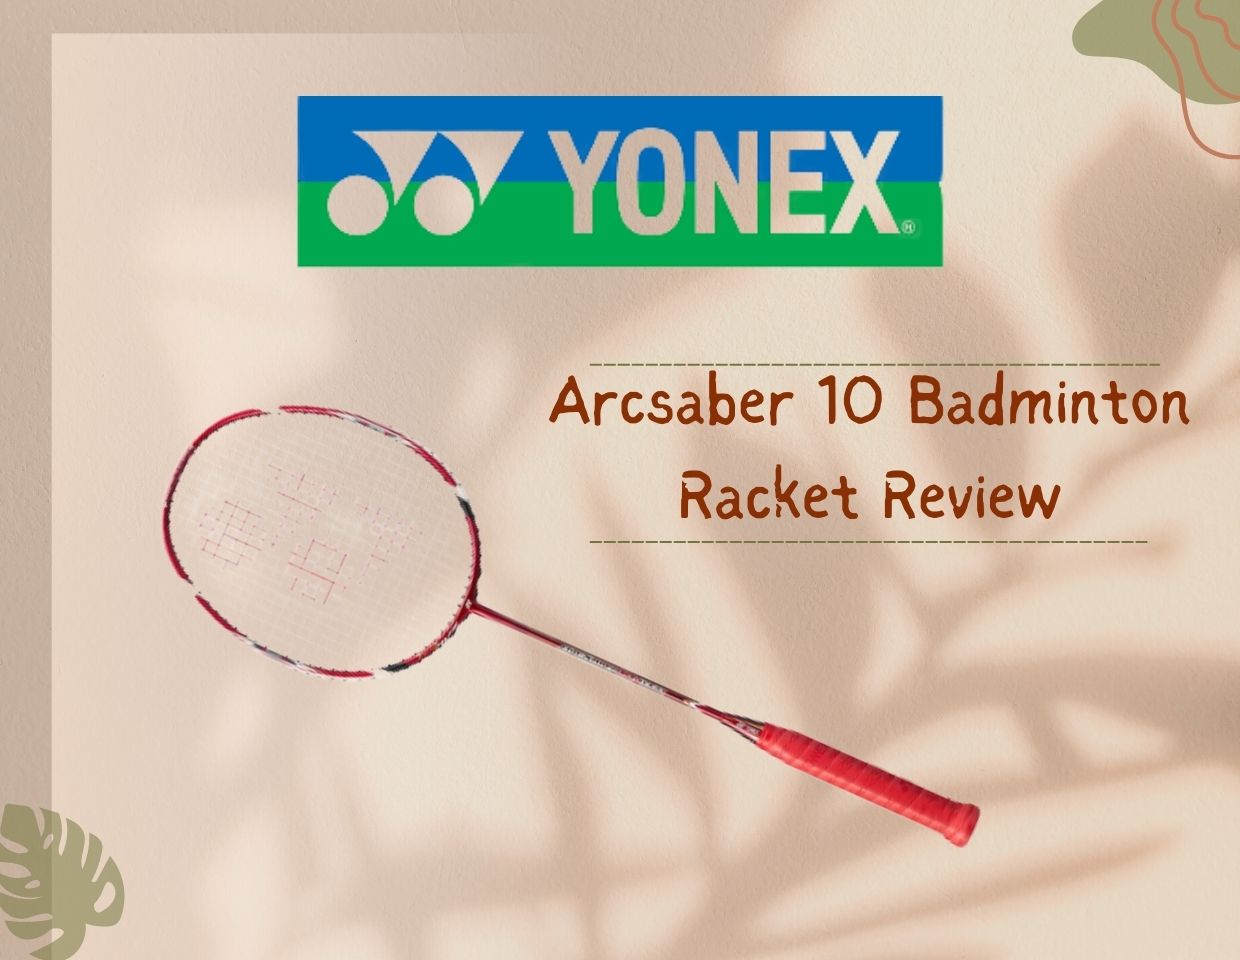 Yonex-Arcsaber-10-Badminton-Racket